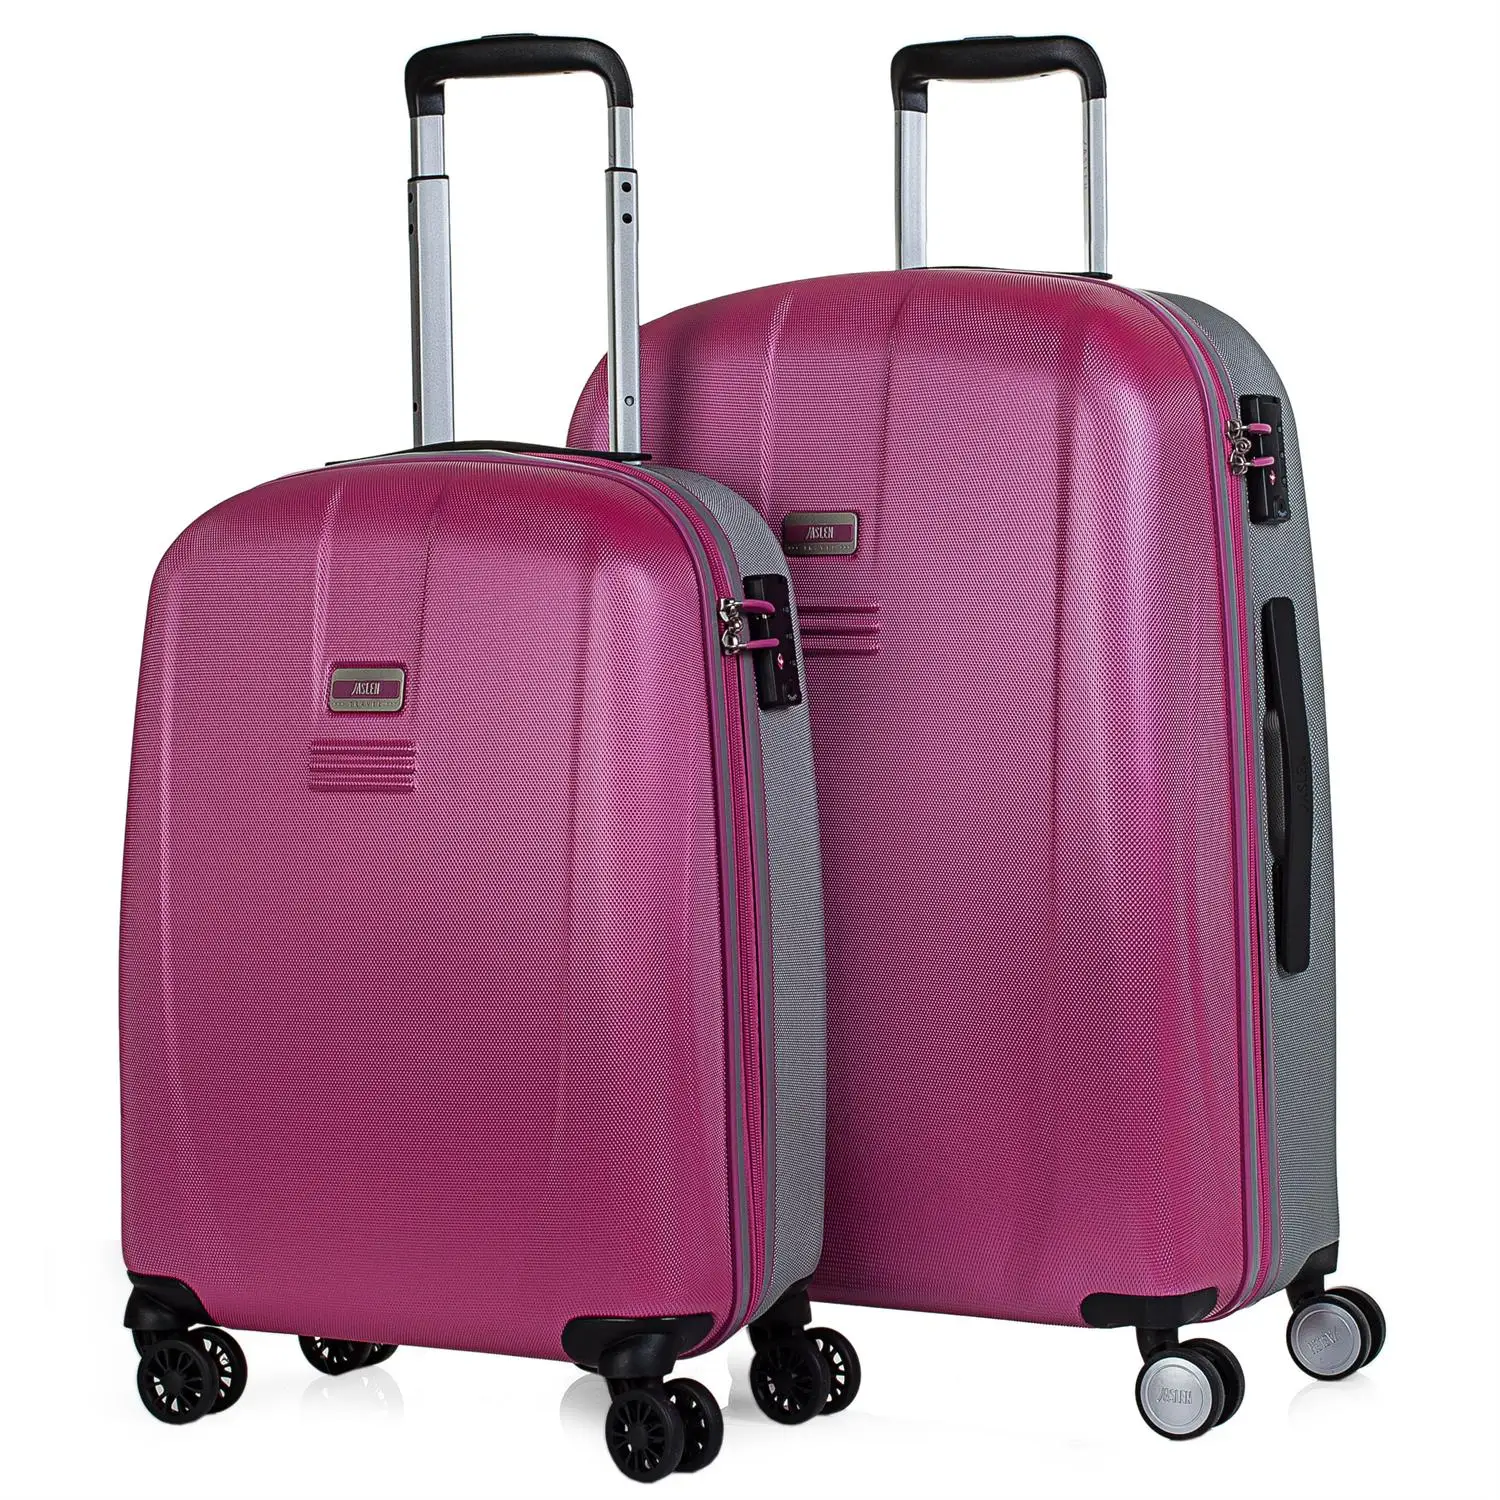 Juego De 'S чемоданы дорожные жесткие 4 колеса Колесики Тележки 55/66 см ABS. Стойкий и легкий. Ручки и C - Цвет: Розовый